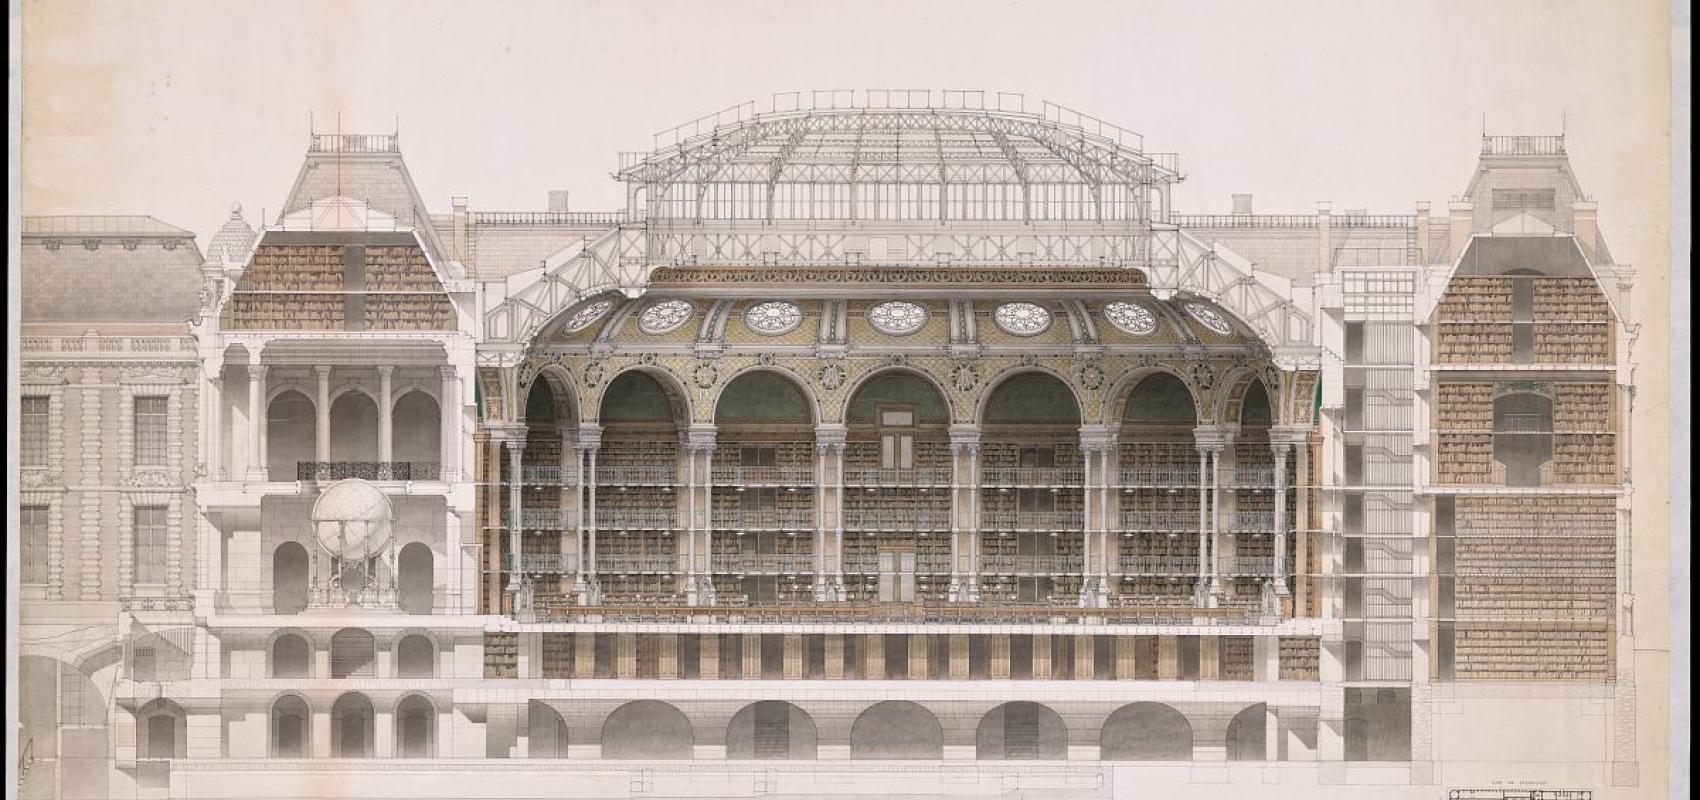 Bibliothèque nationale coupe suivant le grand axe de la salle ovale, dessin de Jean-Louis Pascal - 1892 - BnF, département des Estampes et de la photographie